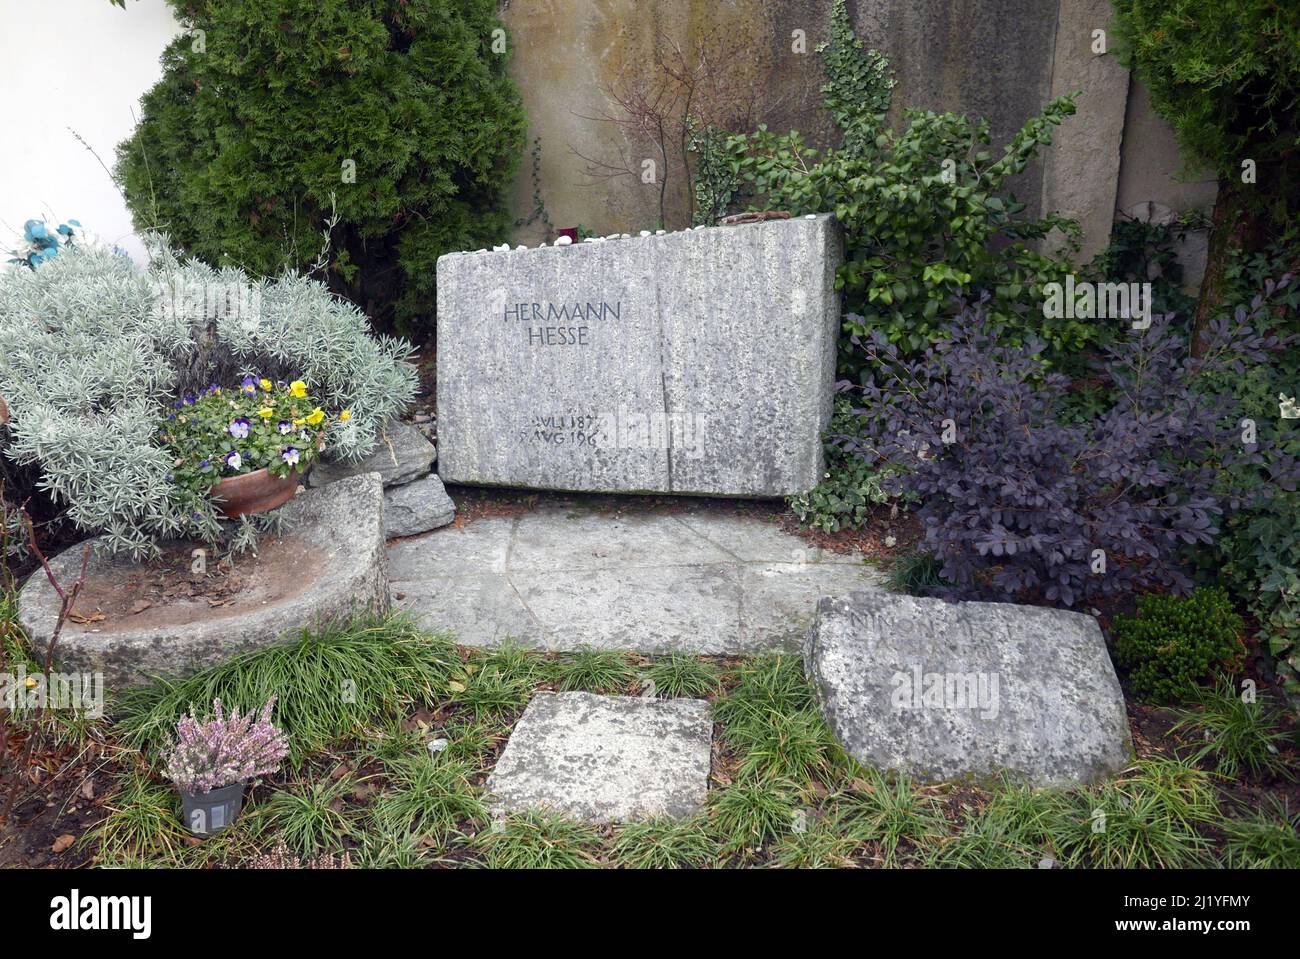 MONTAGNOLA, SUISSE - 6 FÉVRIER 2022 : tombe de Hermann Hesse, écrivain et poète allemand de renommée mondiale qui a remporté le prix Nobel de littérature Banque D'Images